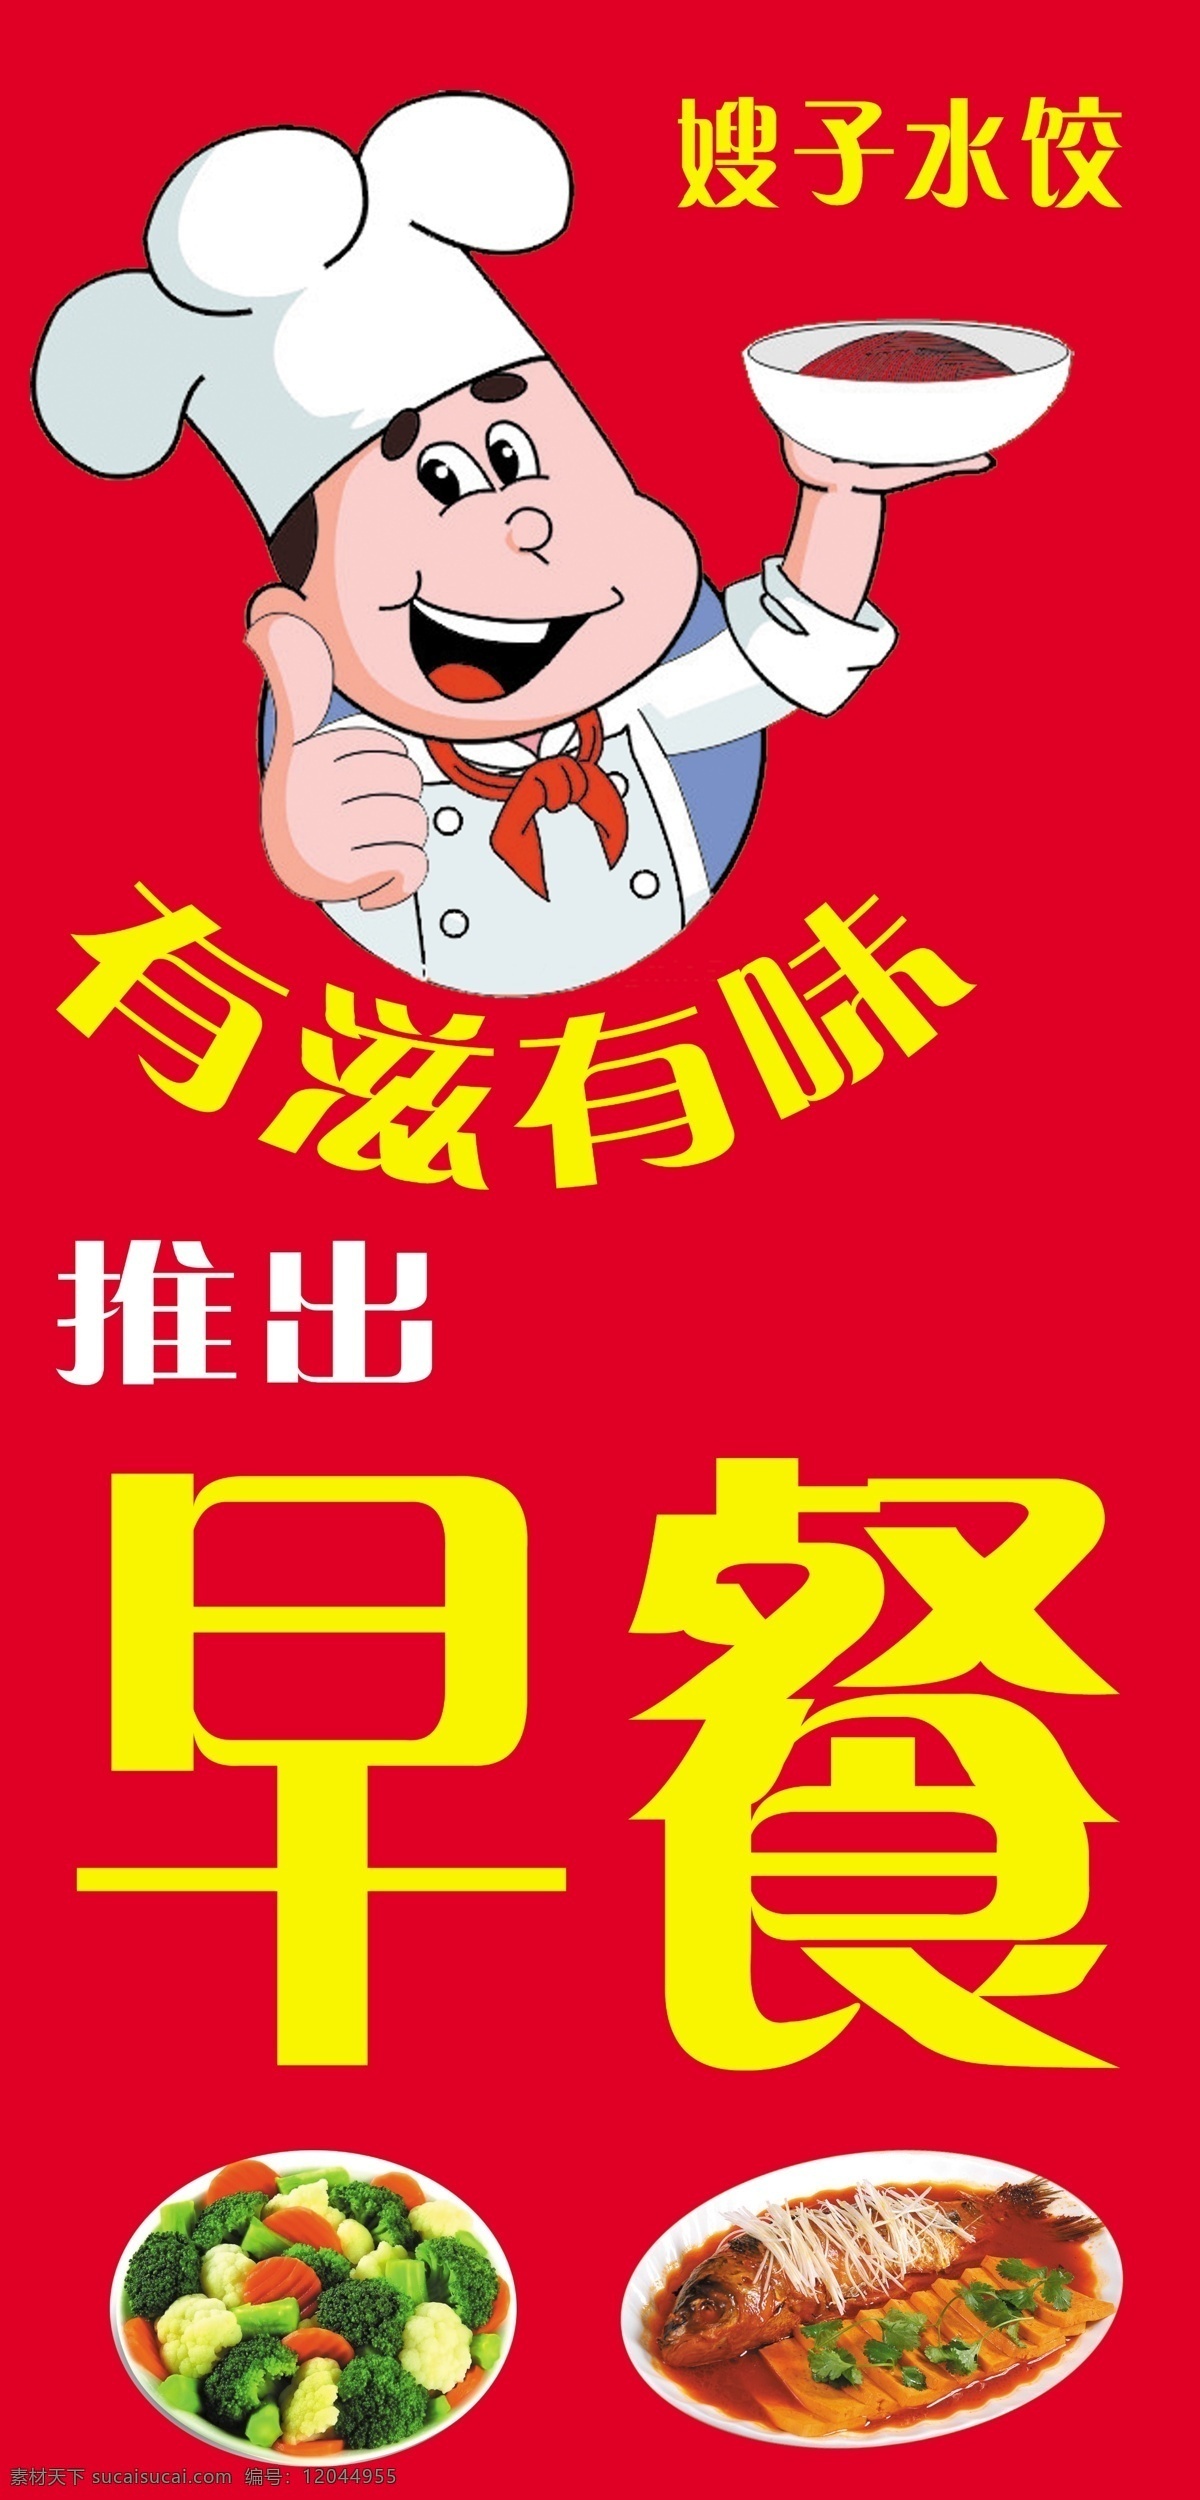 早餐 厨师 漫画 水饺 菜 广告设计模板 源文件